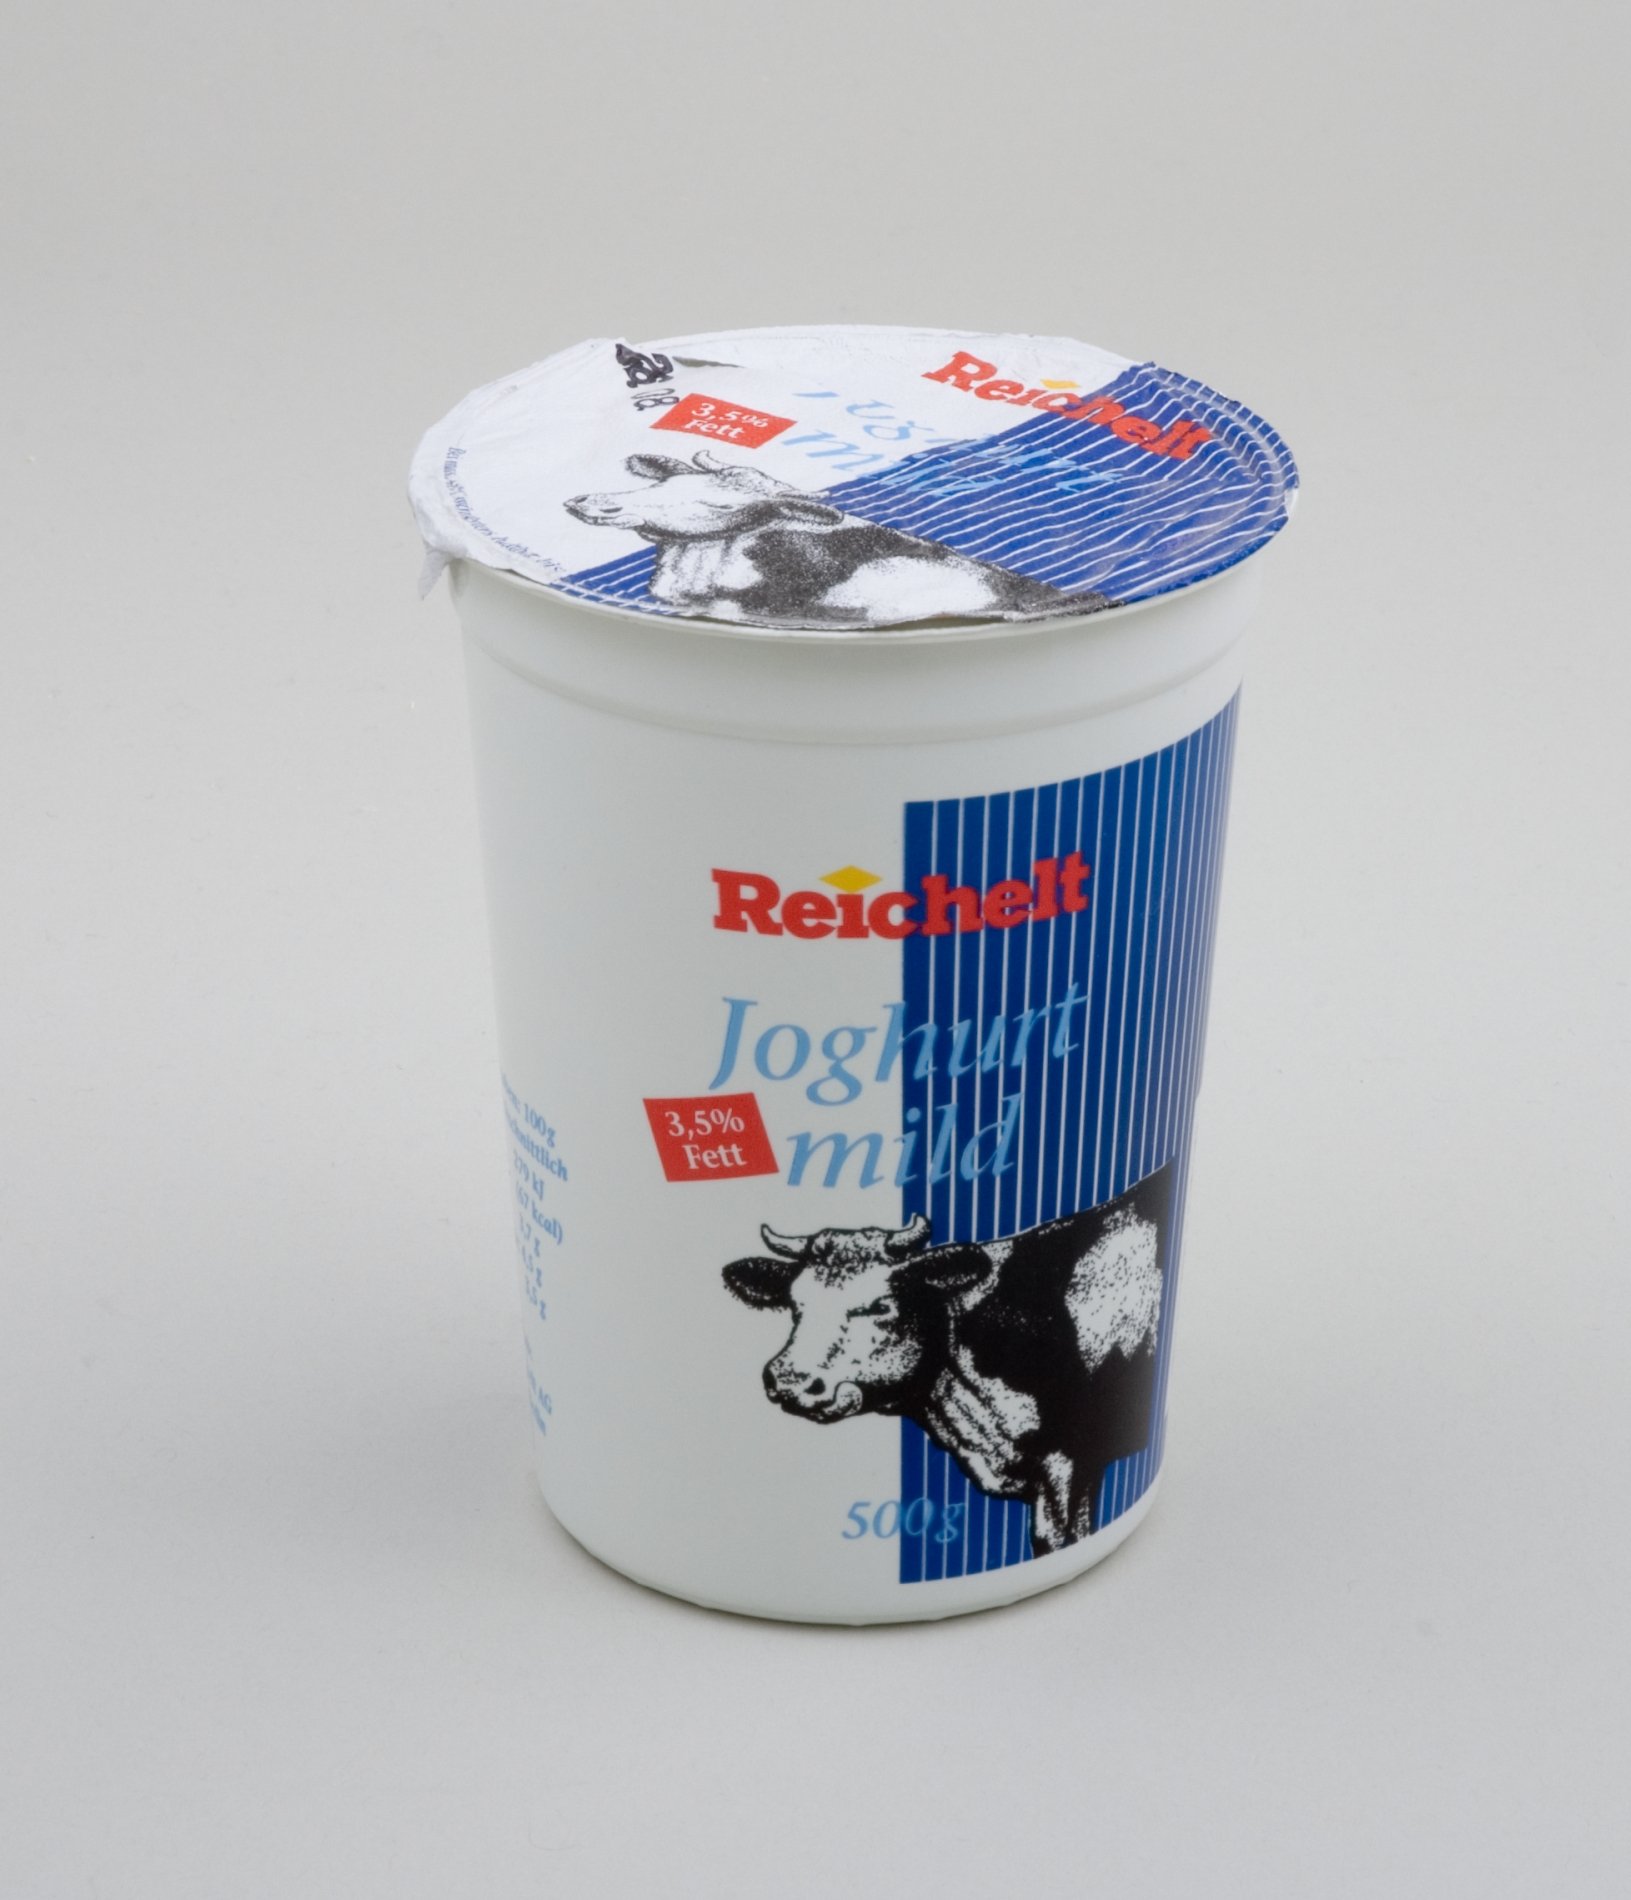 Warenmuster "Joghurt mild " Becher der Firma "Reichelt" (Stiftung Domäne Dahlem - Landgut und Museum, Weiternutzung nur mit Genehmigung des Museums CC BY-NC-SA)